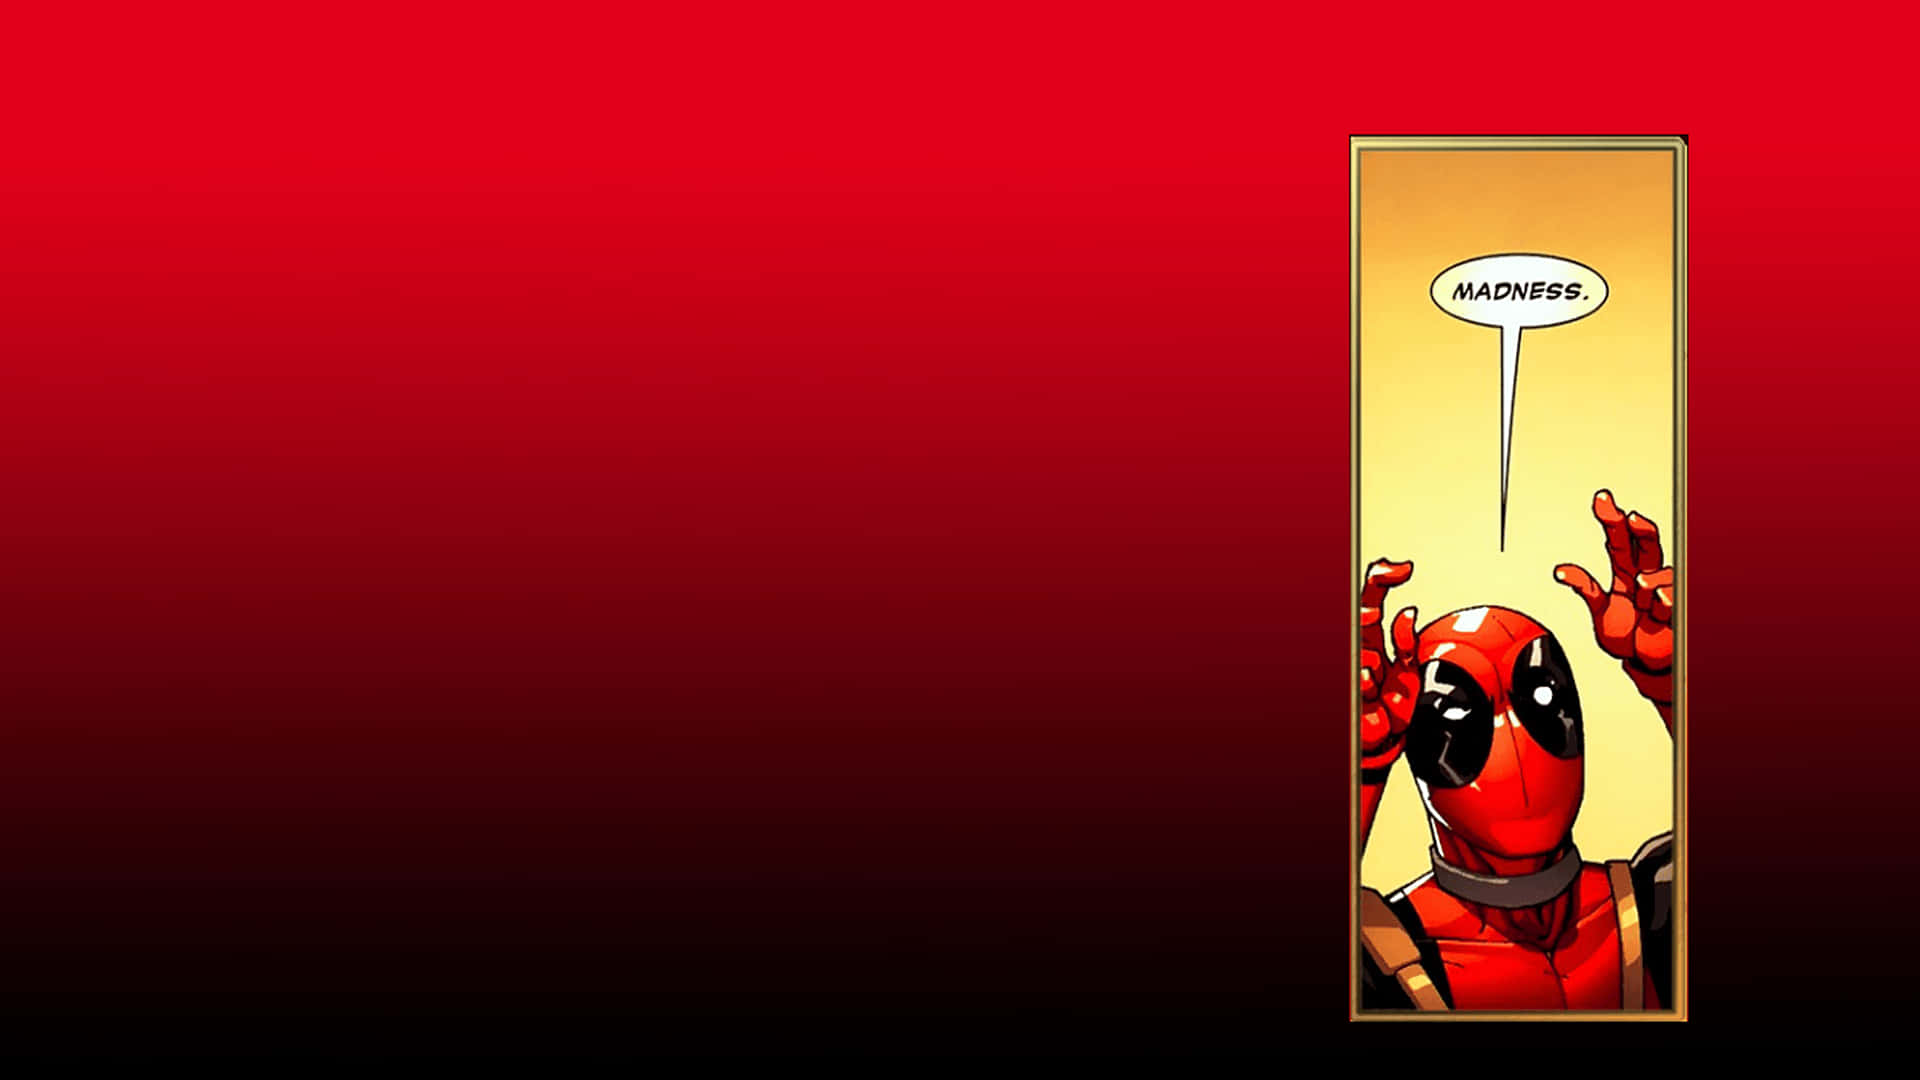 Skrattahögt Med Roliga Deadpool På Ditt Datorskärms- Eller Mobilskärmsbakgrund! Wallpaper